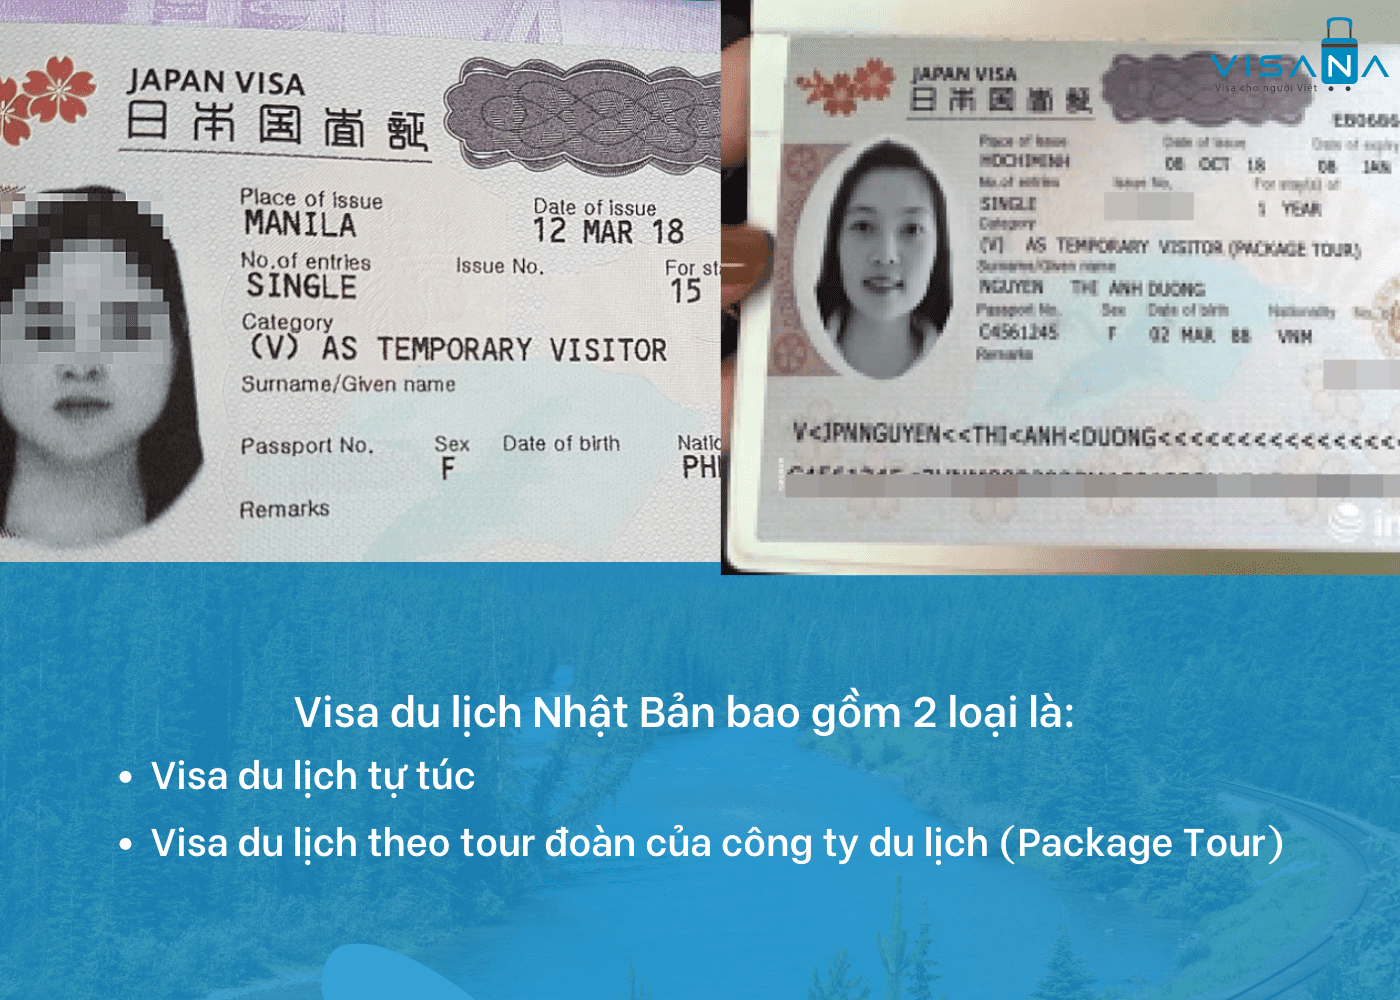 Thủ tục xin Visa Nhật Bản - Thái An Travel - 2